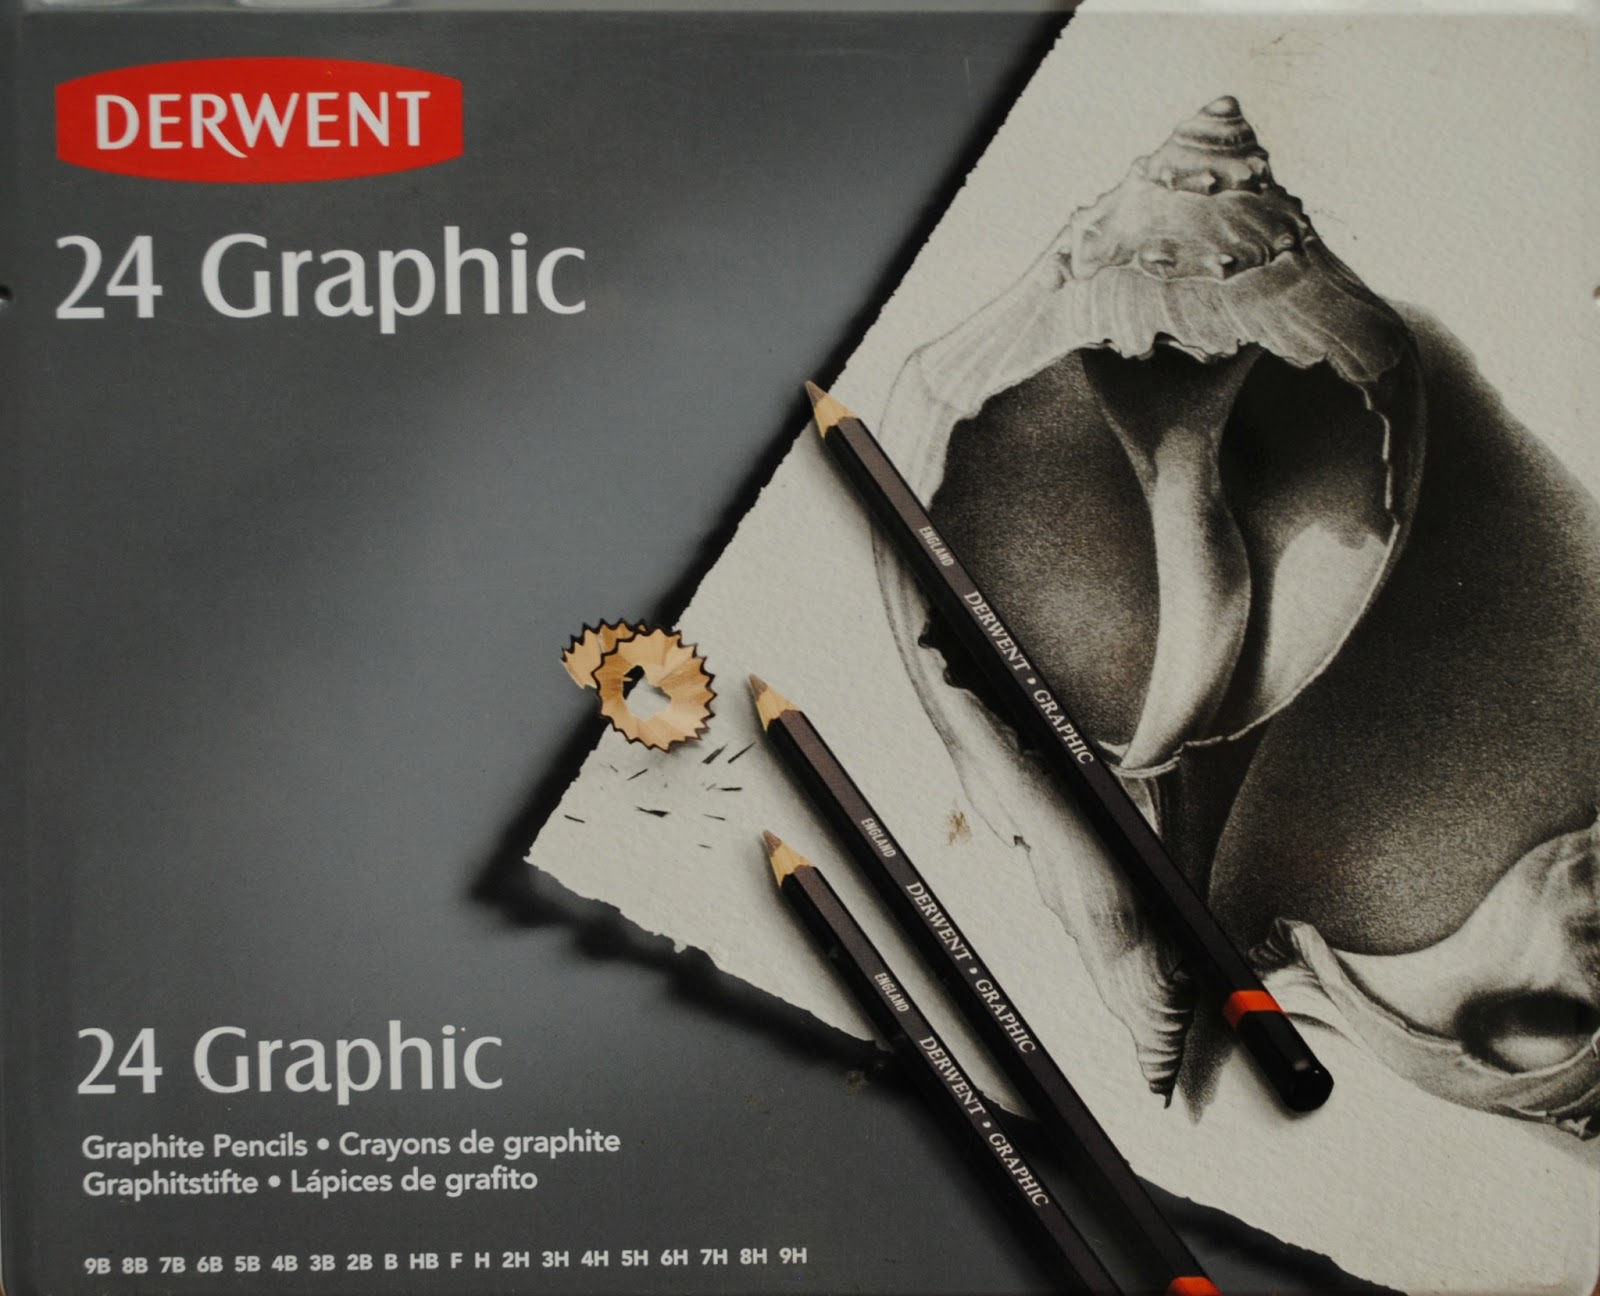 Derwent Graphic Soft Set of 12